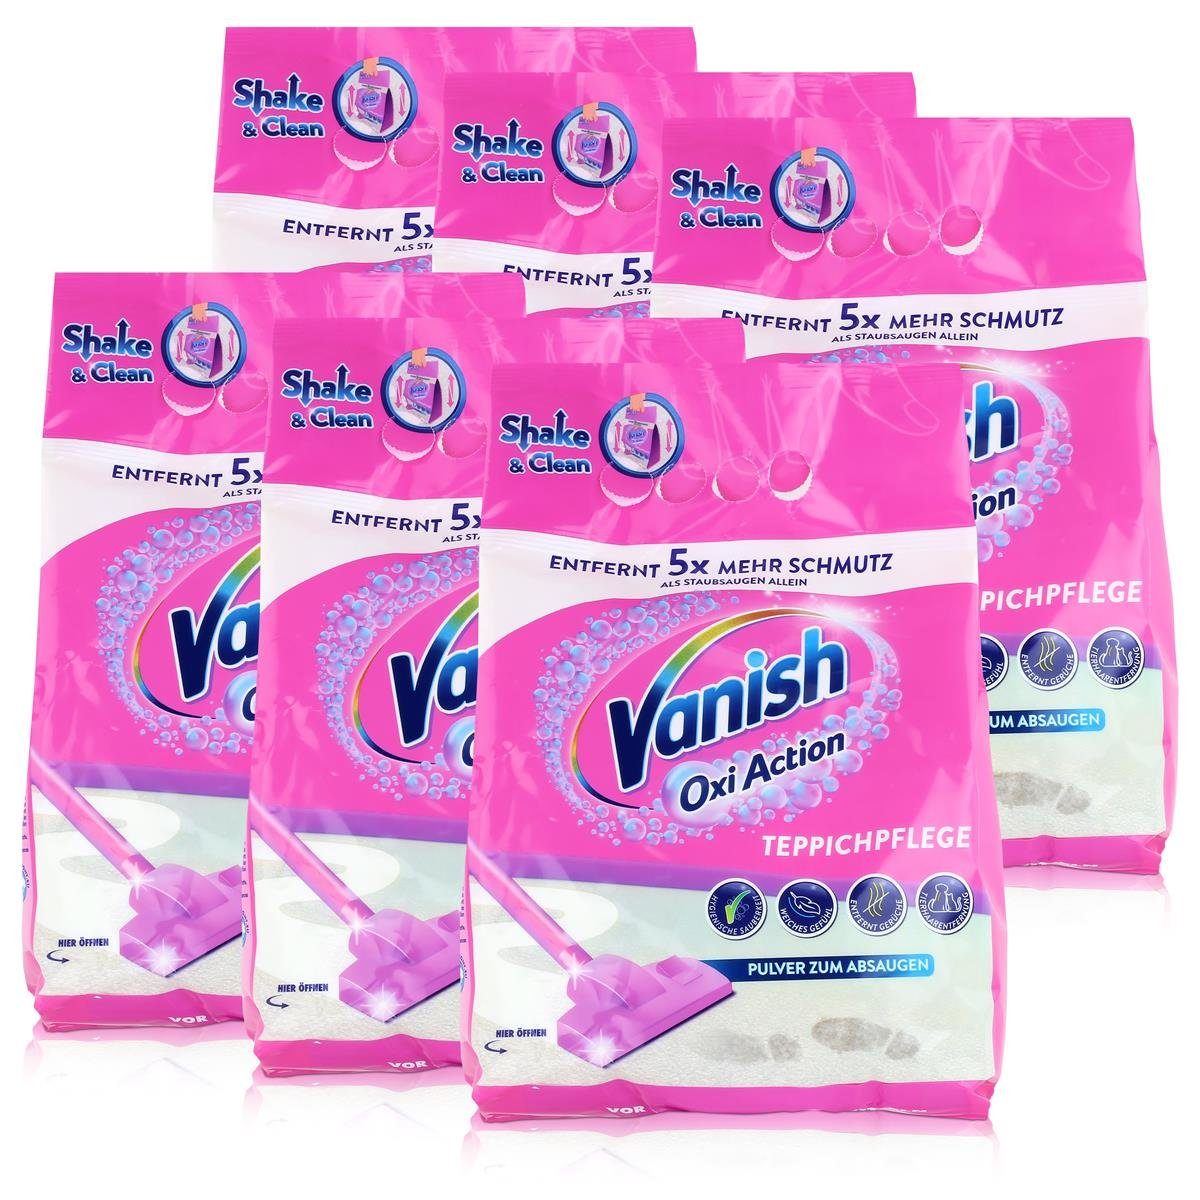 VANISH Vanish Oxi Action Teppichpflege 820g Pulver zum Absaugen (6er Pack)  Teppichreiniger